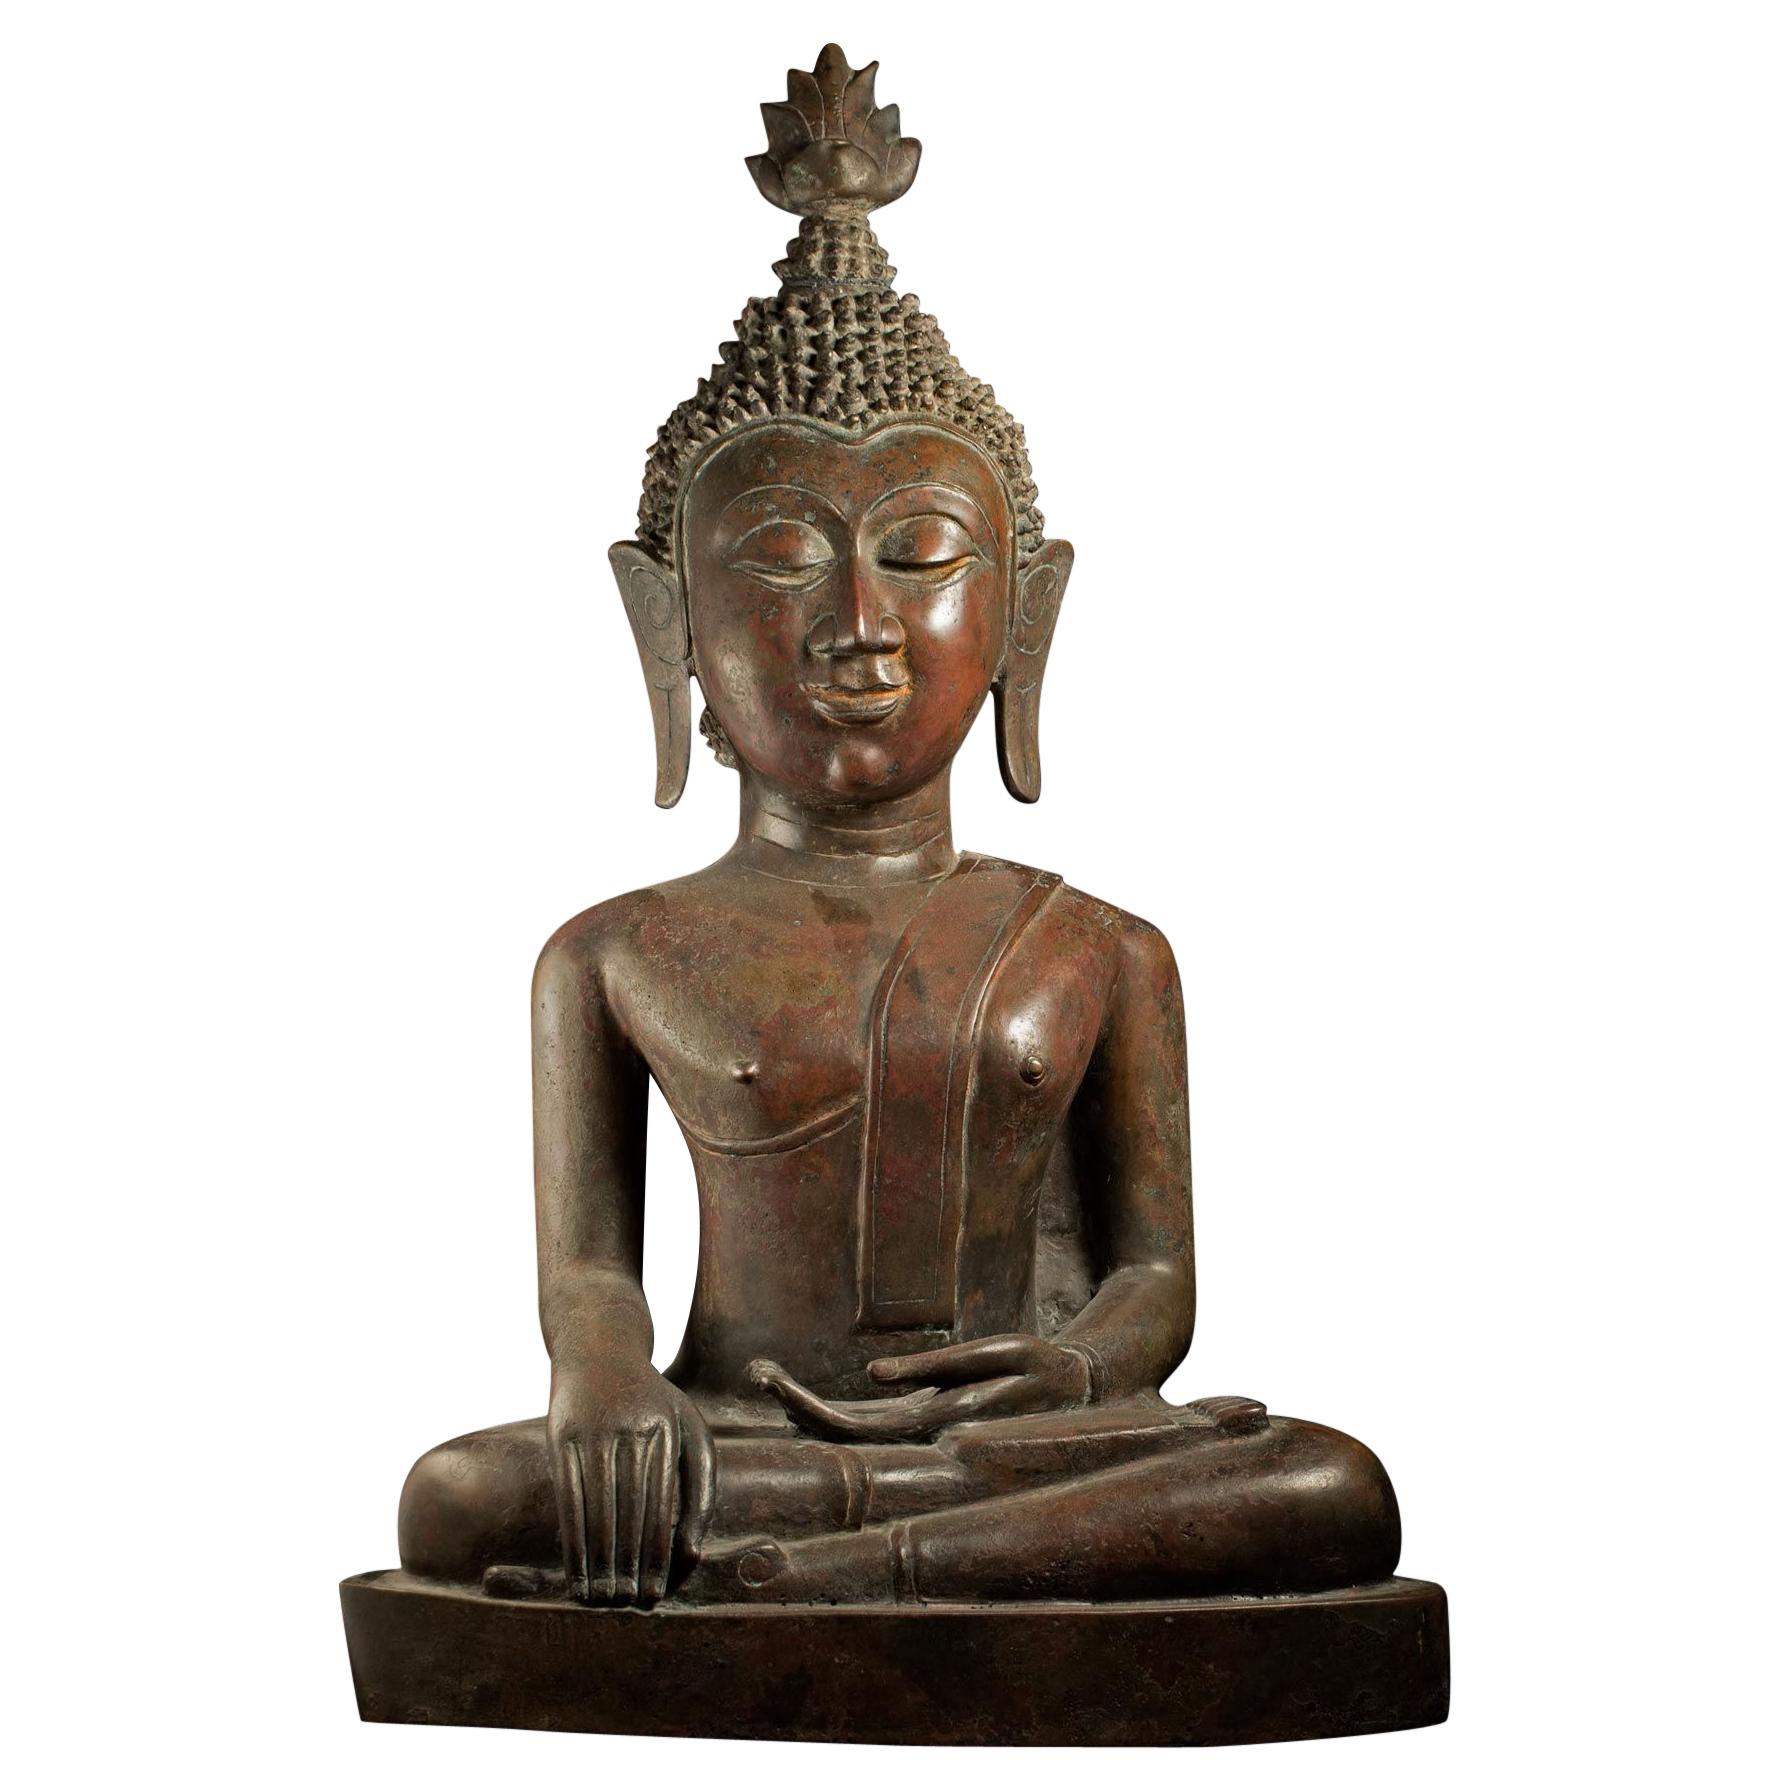 Grand royaume de Bouddha en bronze du 18/19e siècle de Nan dans le nord-est de la Thaïlande - 8961